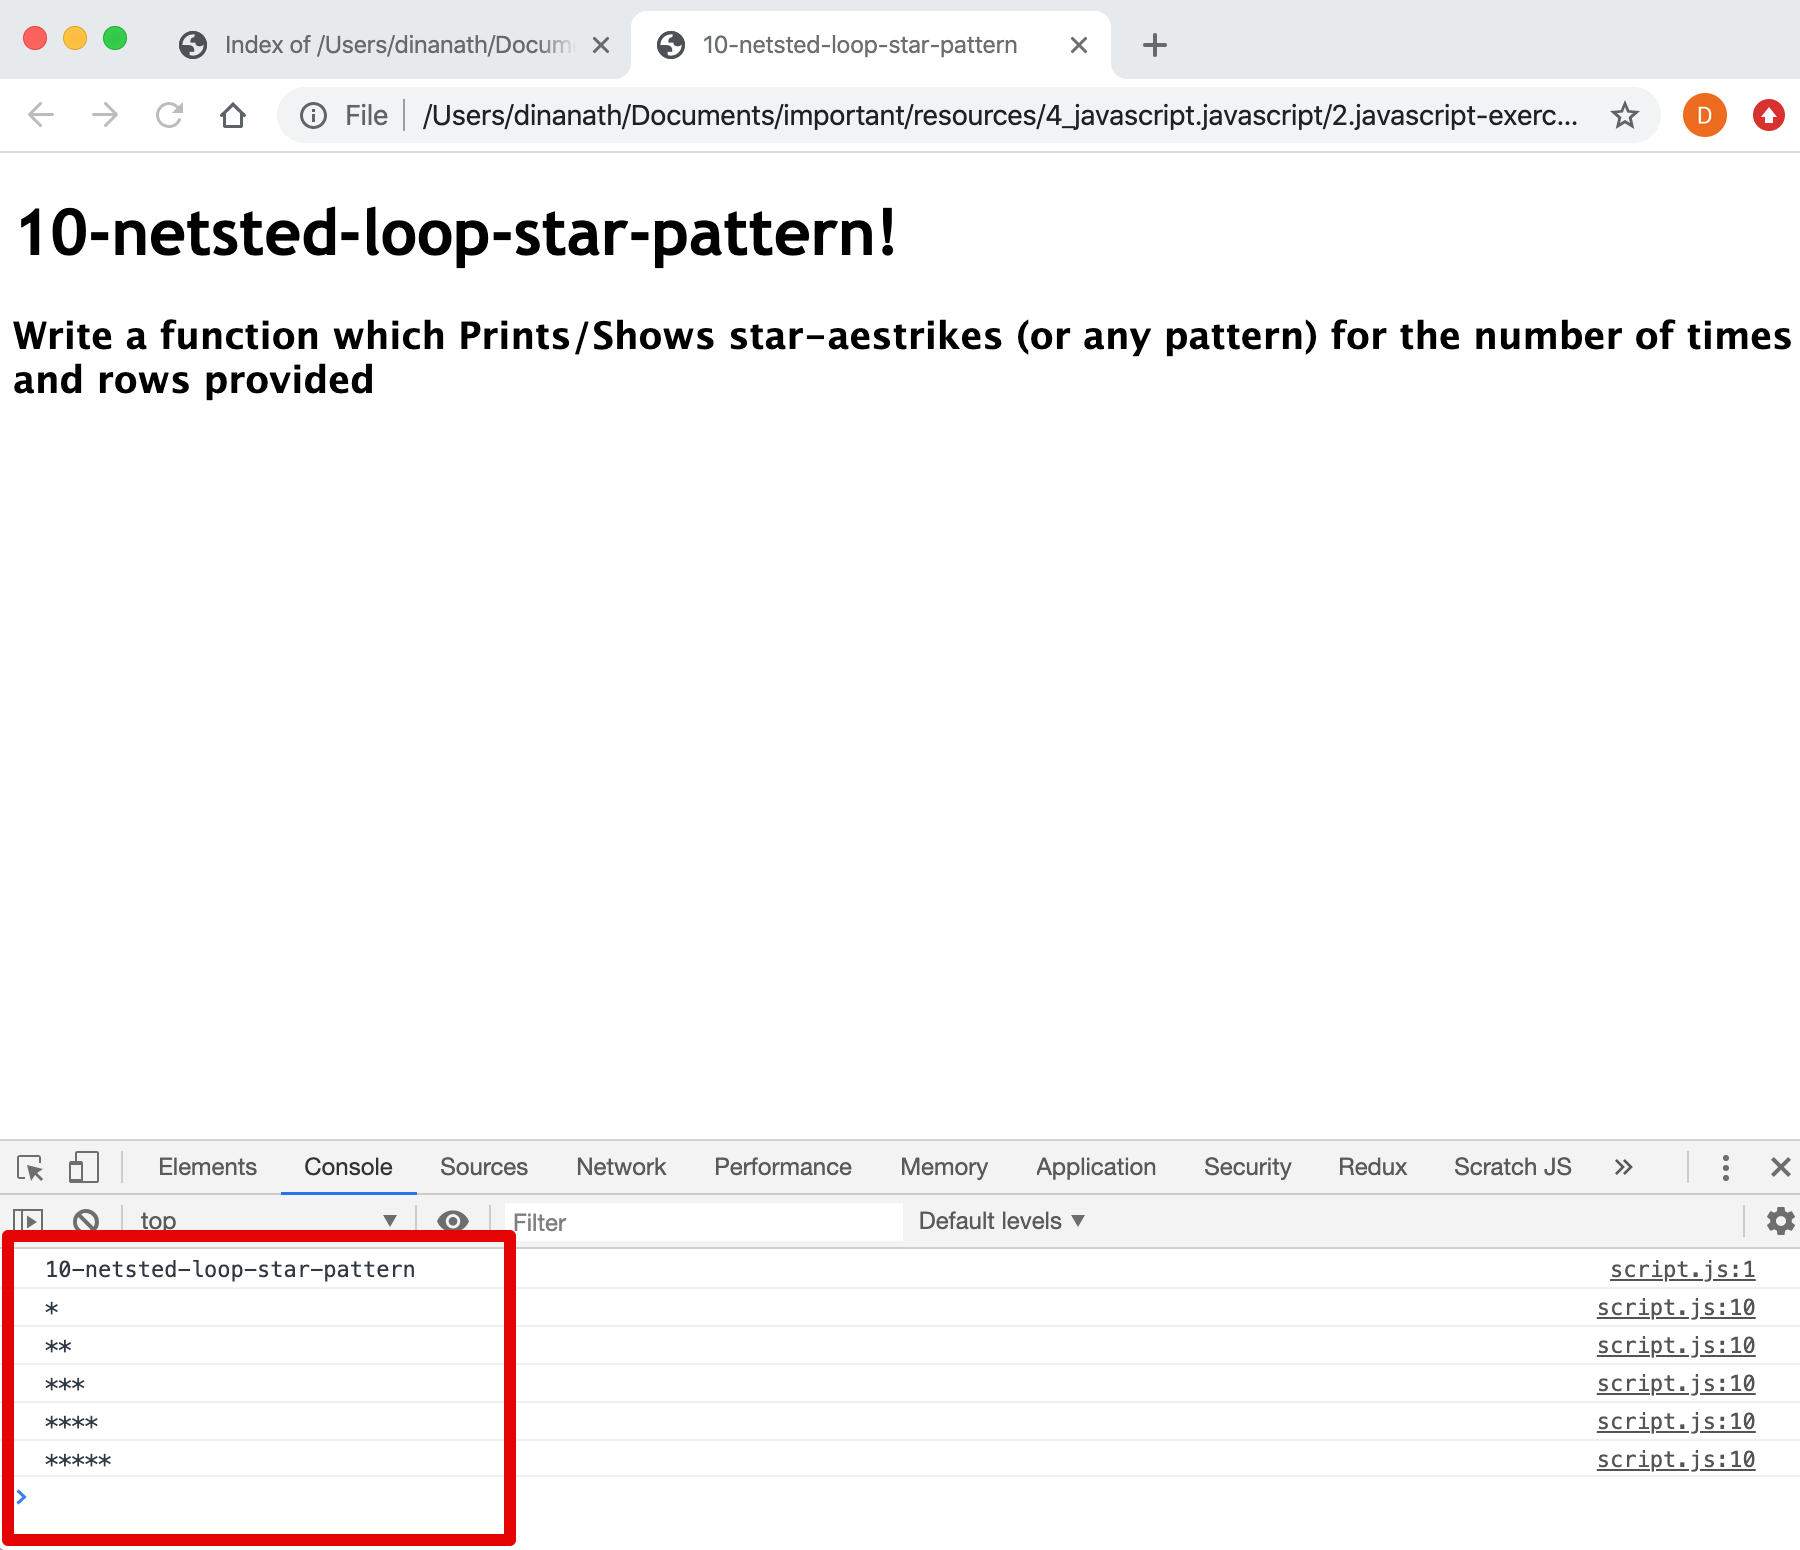 Netsted Loop Star Pattern